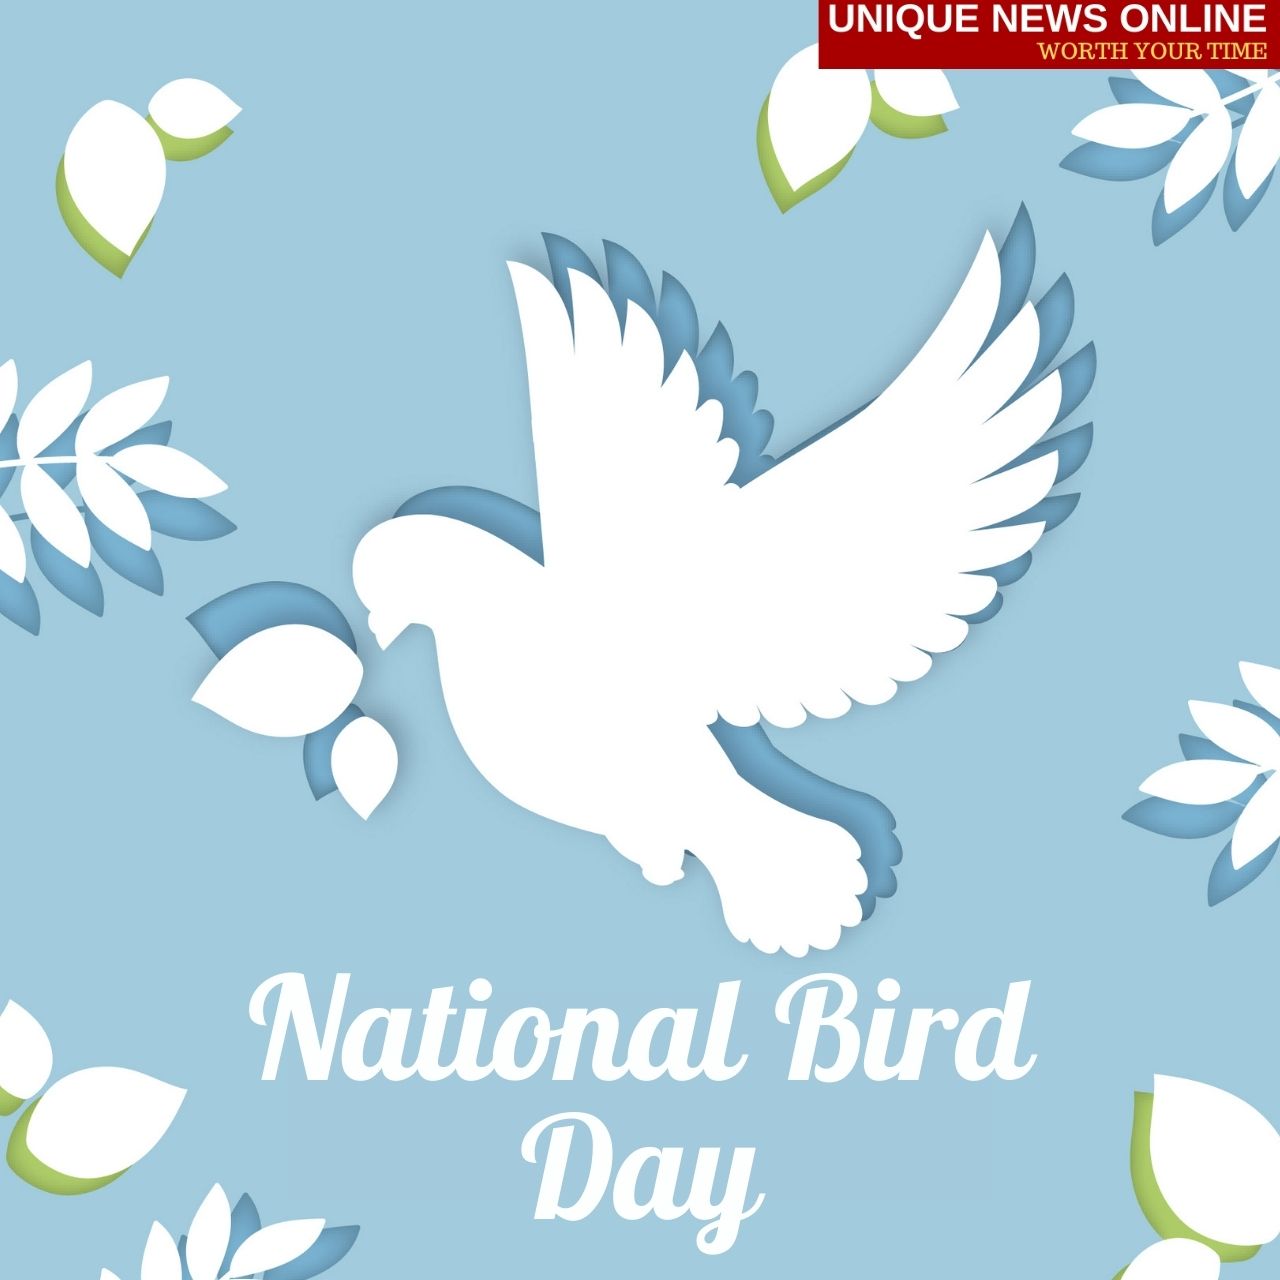 اليوم الوطني للطيور (الولايات المتحدة الأمريكية) 2022 التمنيات والاقتباسات والمذكرات والتحيات وملصقات وسائل التواصل الاجتماعي والتعليقات التوضيحية على Instagram للمشاركة